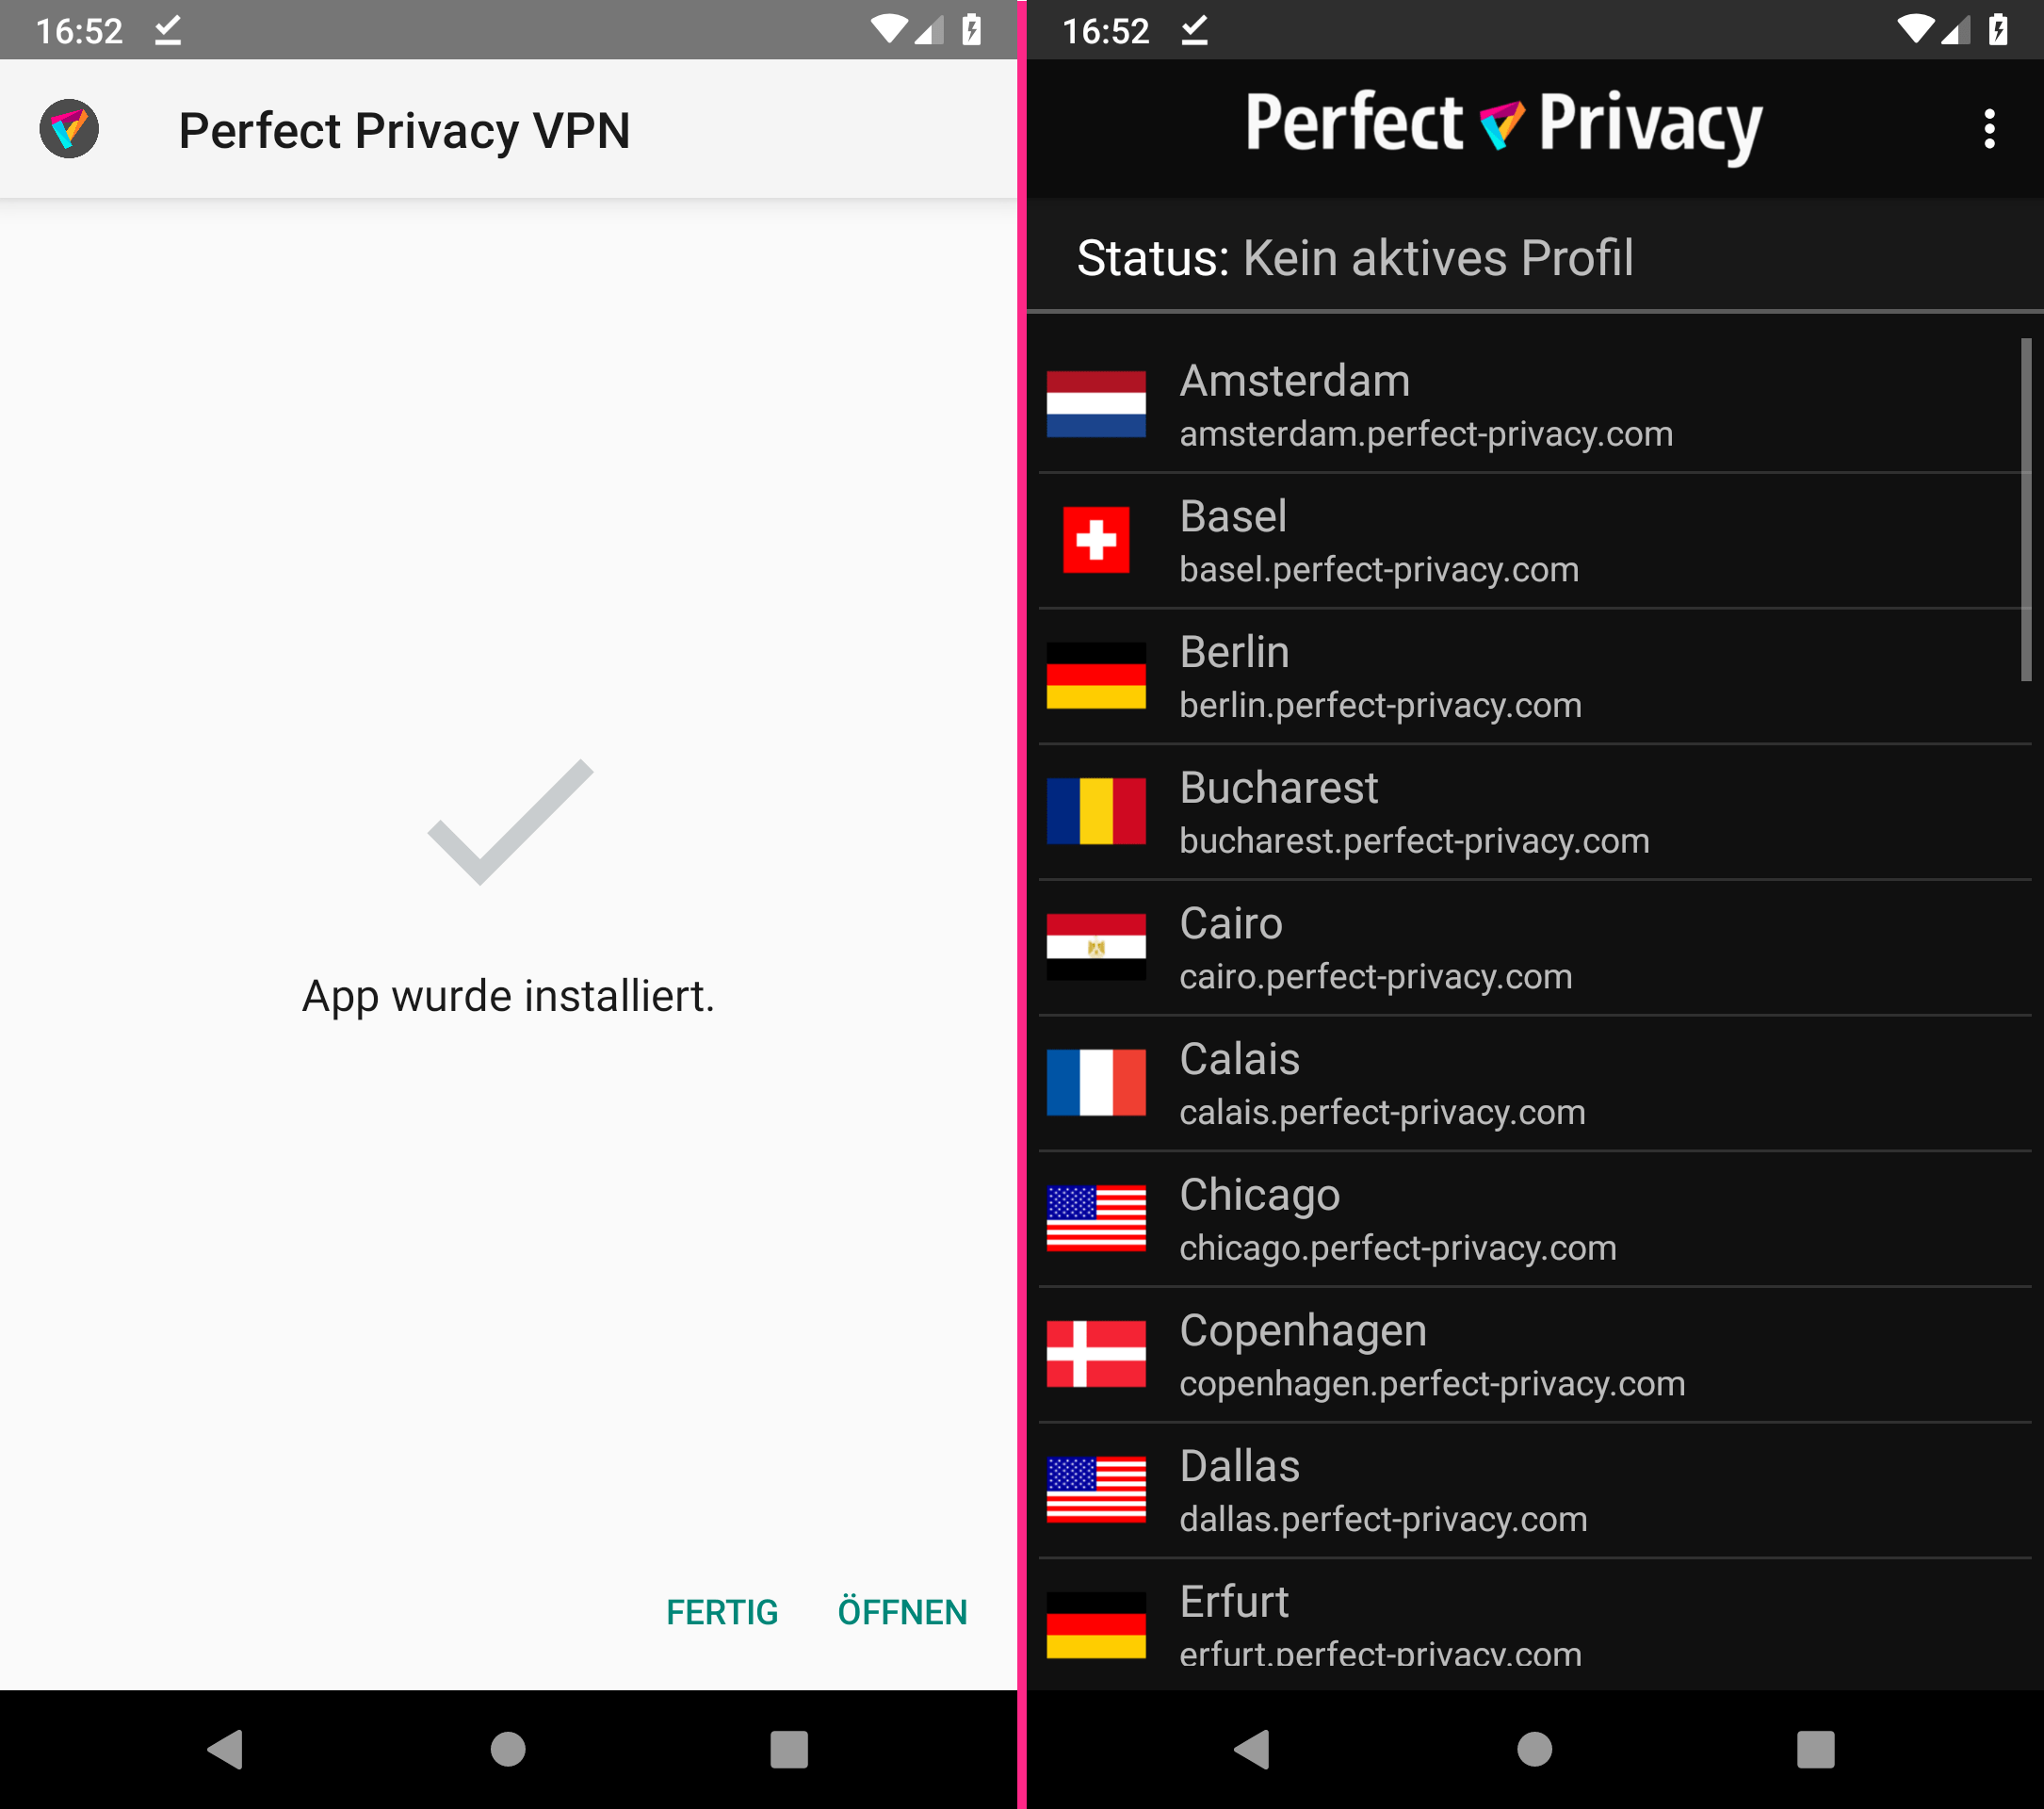 Installation abgeschlossen | Perfect Privacy VPN App für Android: .apk herunterladen & installieren